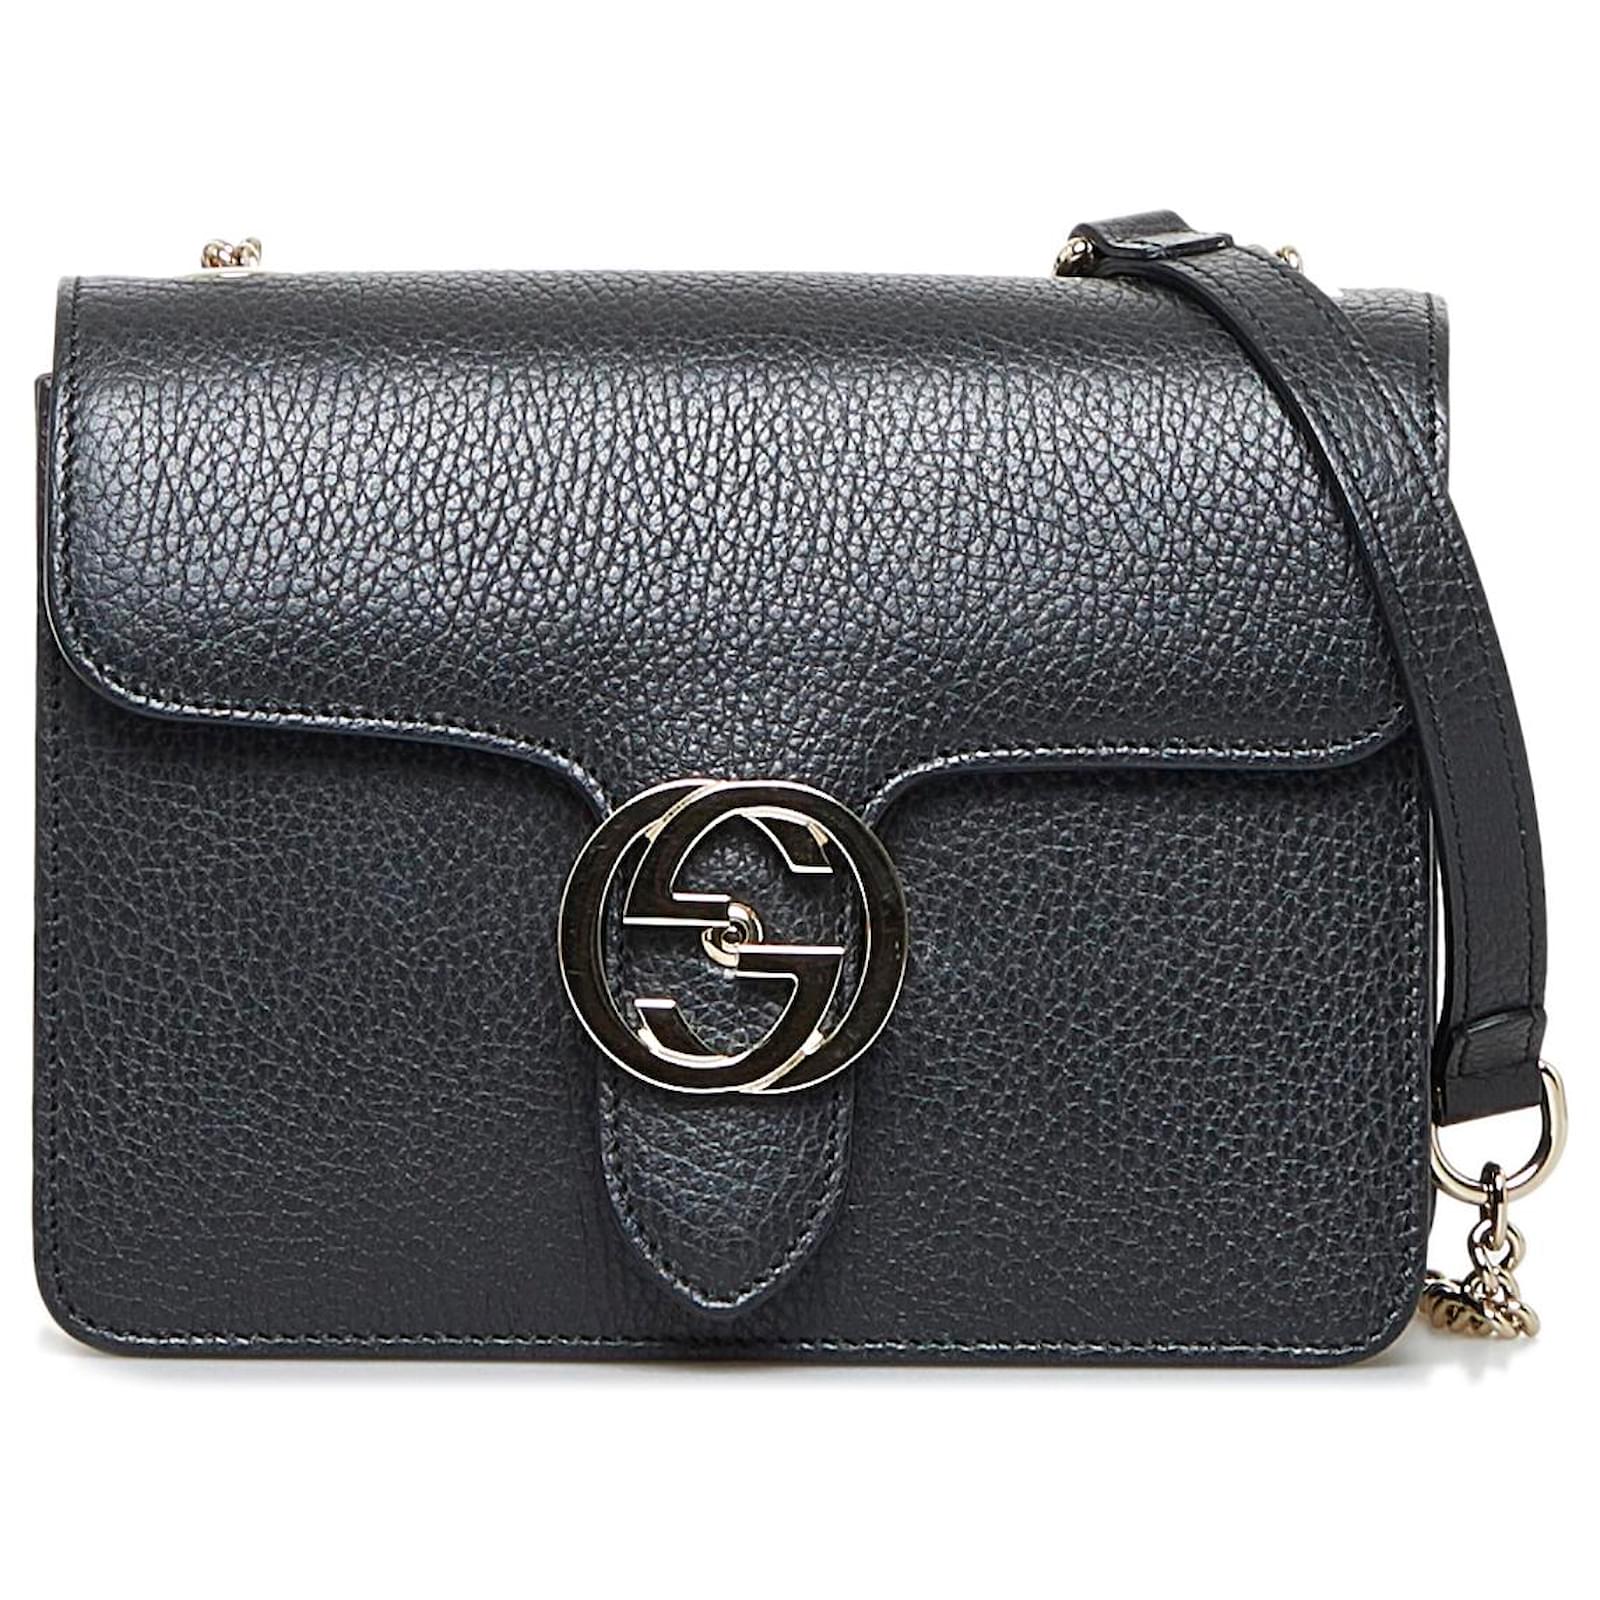 Gucci Black Leather Dollar Interlocking G Crossbody Bag Gucci